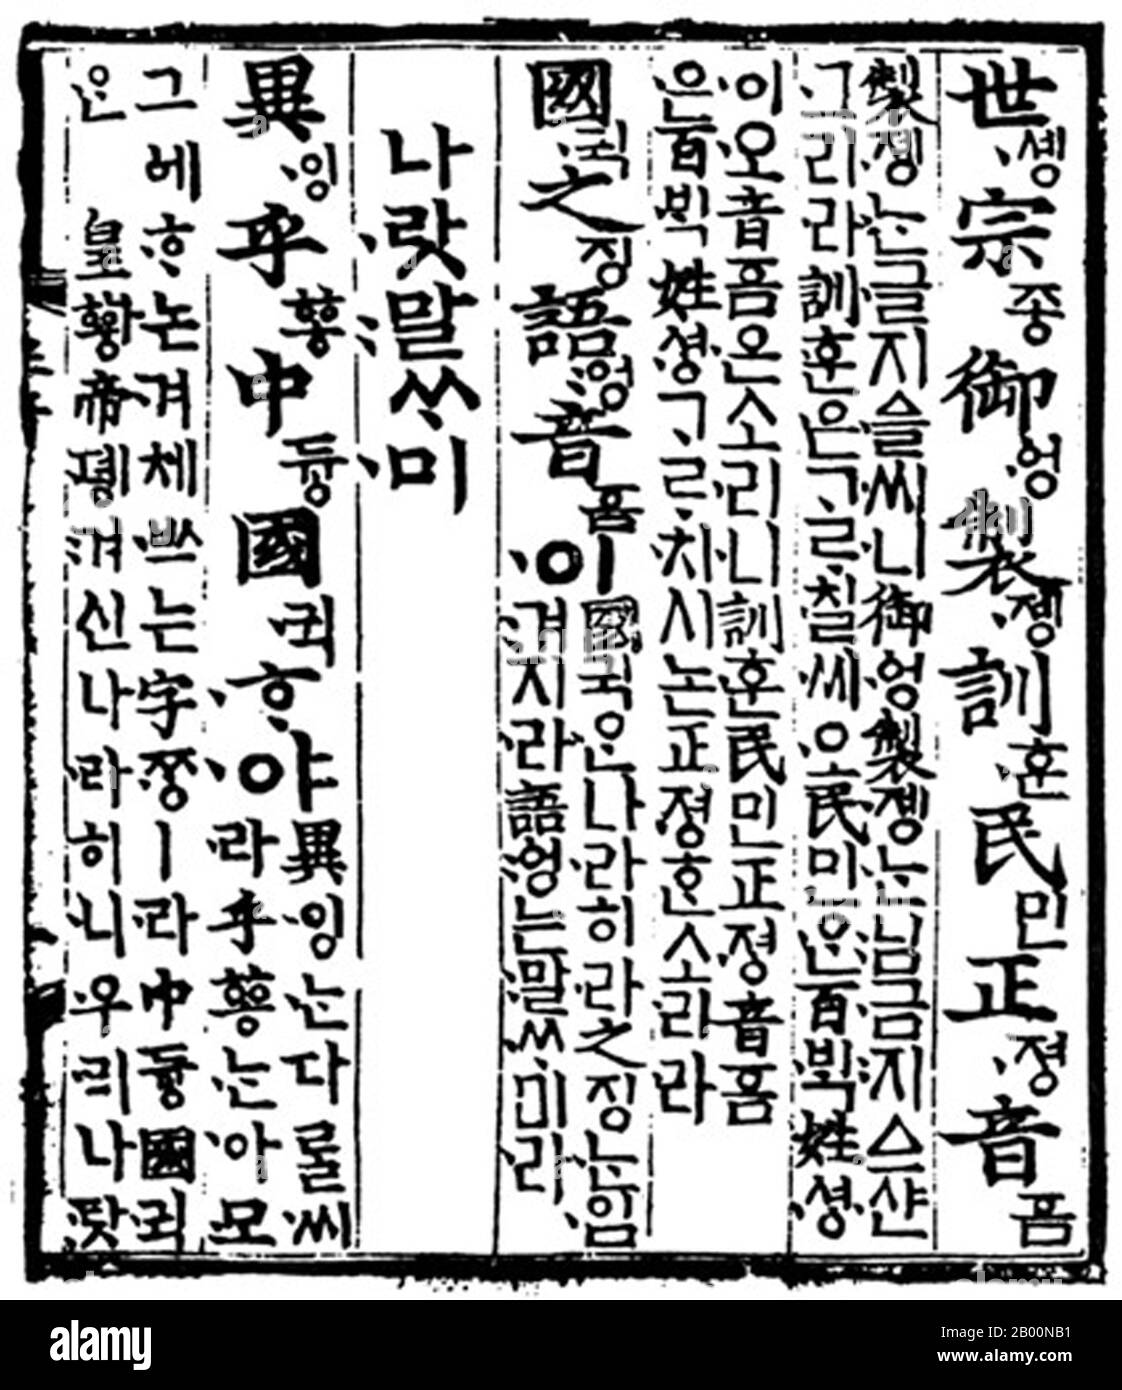 Korea: Hangul-Schrift: Eine Seite aus dem Hunmin Jeongeum Eonhae, eine Teilübersetzung des Hunmin Jeongeum, der ursprünglichen Verkündigung von Hangul, 1443. Hangul ist das native Alphabet der koreanischen Sprache, das sich von den logographischen Hanja- und Lautsystemen unterscheidet. Es wurde Mitte des 15. Jahrhunderts gegründet und ist heute das offizielle Drehbuch sowohl von Nordkorea als auch von Südkorea, da es in der Autonomen Präfektur Yanbian in der Provinz Jilin, China, Co-offiziell ist. Hangul ist ein phonemisches Alphabet, das in Silbenblöcke organisiert ist. Jeder Block besteht aus mindestens zwei der 24 Hangul-Buchstaben (jamo). Stockfoto